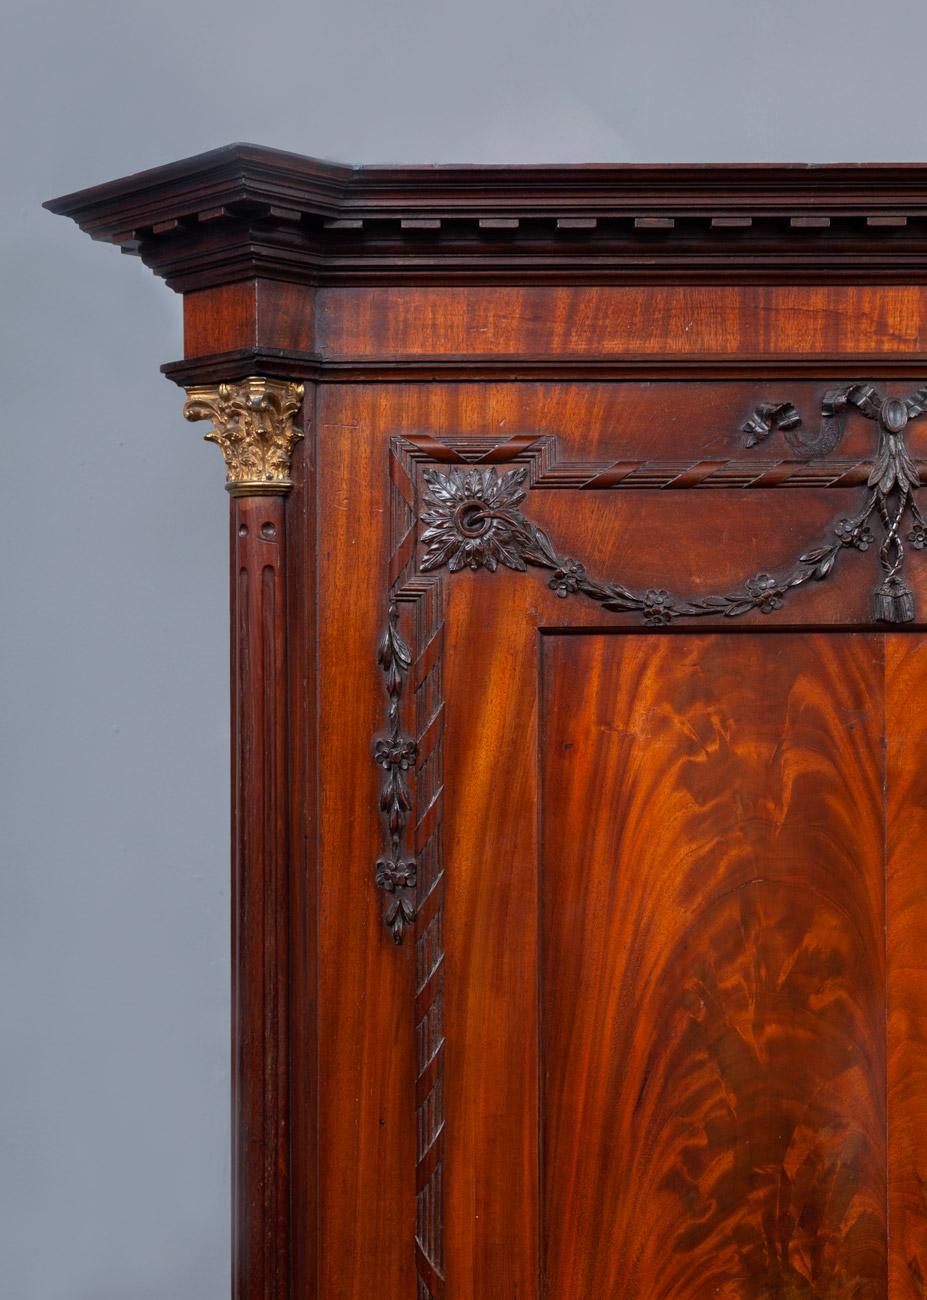 Une belle presse à linge/armoire néoclassique en acajou de la fin du 18ème siècle en fantastique état d'origine. Avec deux grandes portes de placard et trois tiroirs.
L'ébéniste n'a utilisé que les plus belles coupes d'acajou pour produire cette